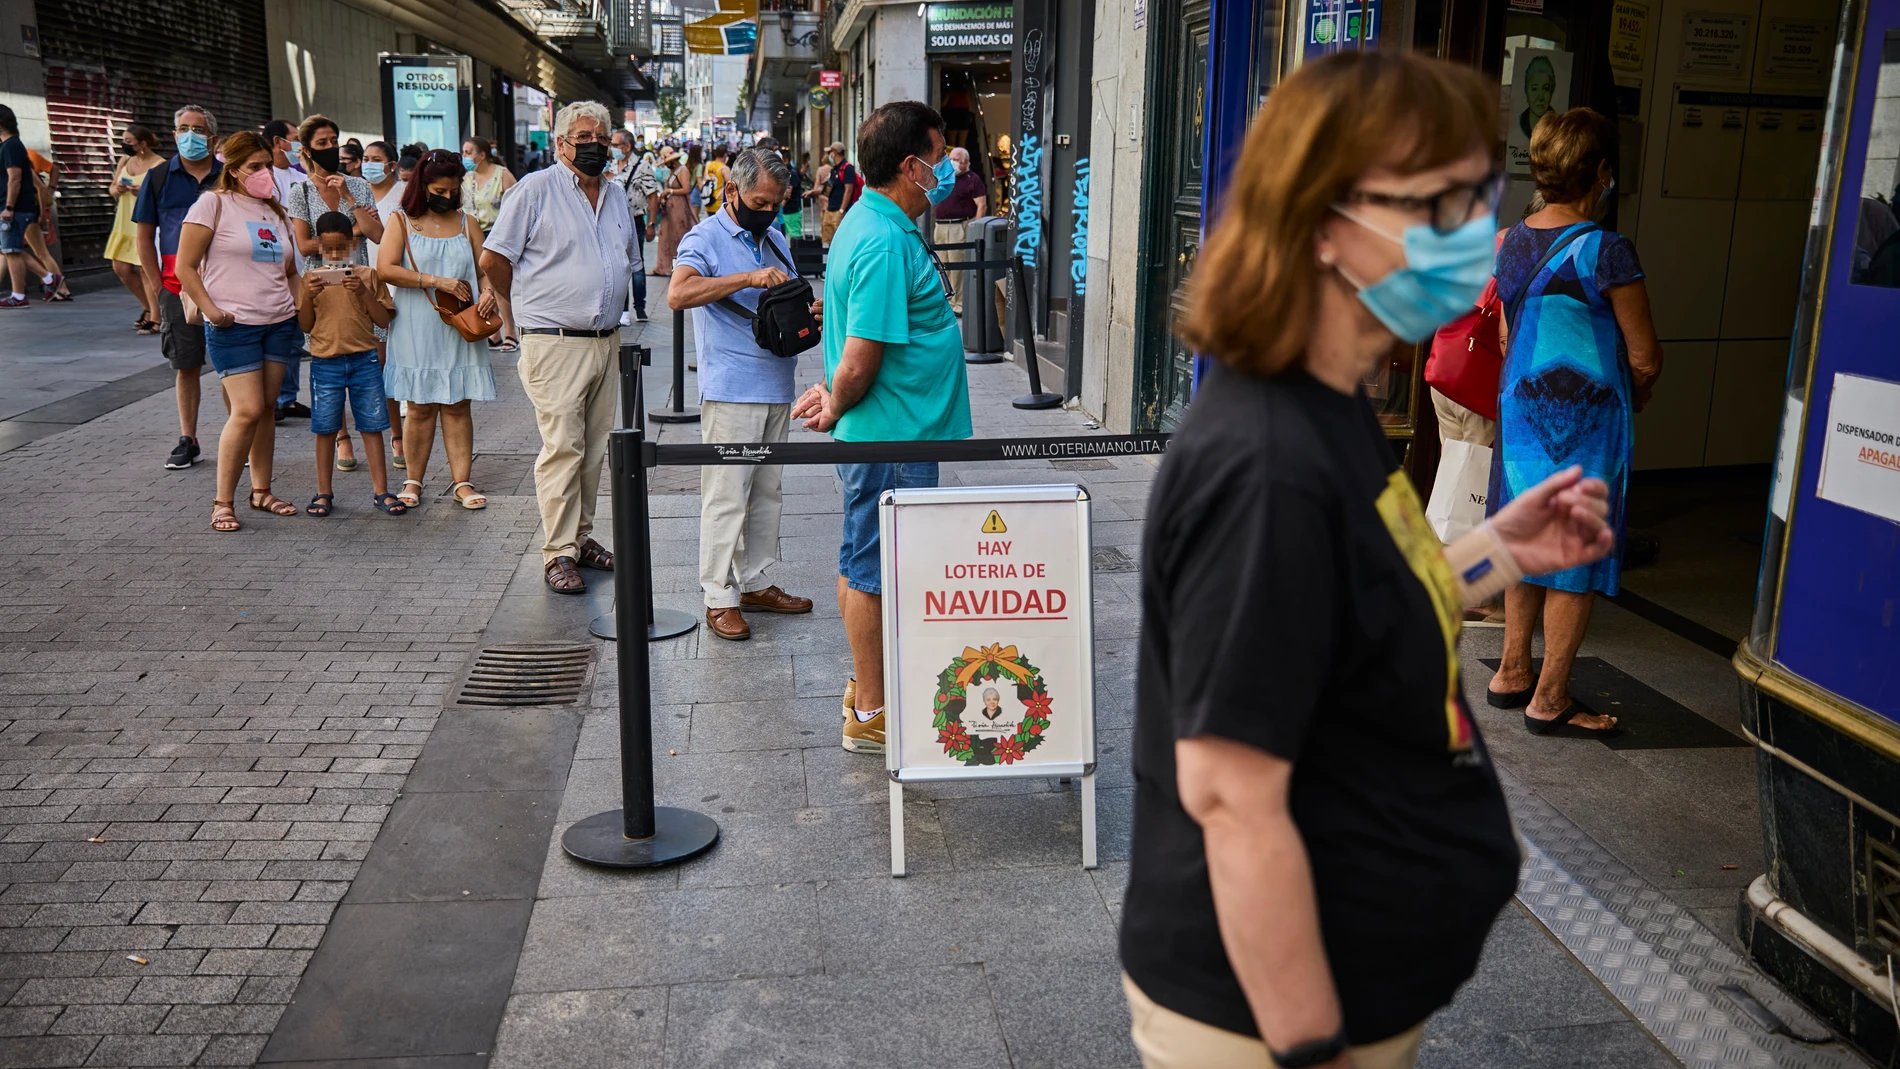 Largas colas de turistas en la madrileña administración de lotería Doña Manolita para adquirir un número del Sorteo de la Lotería de Navidad 2021